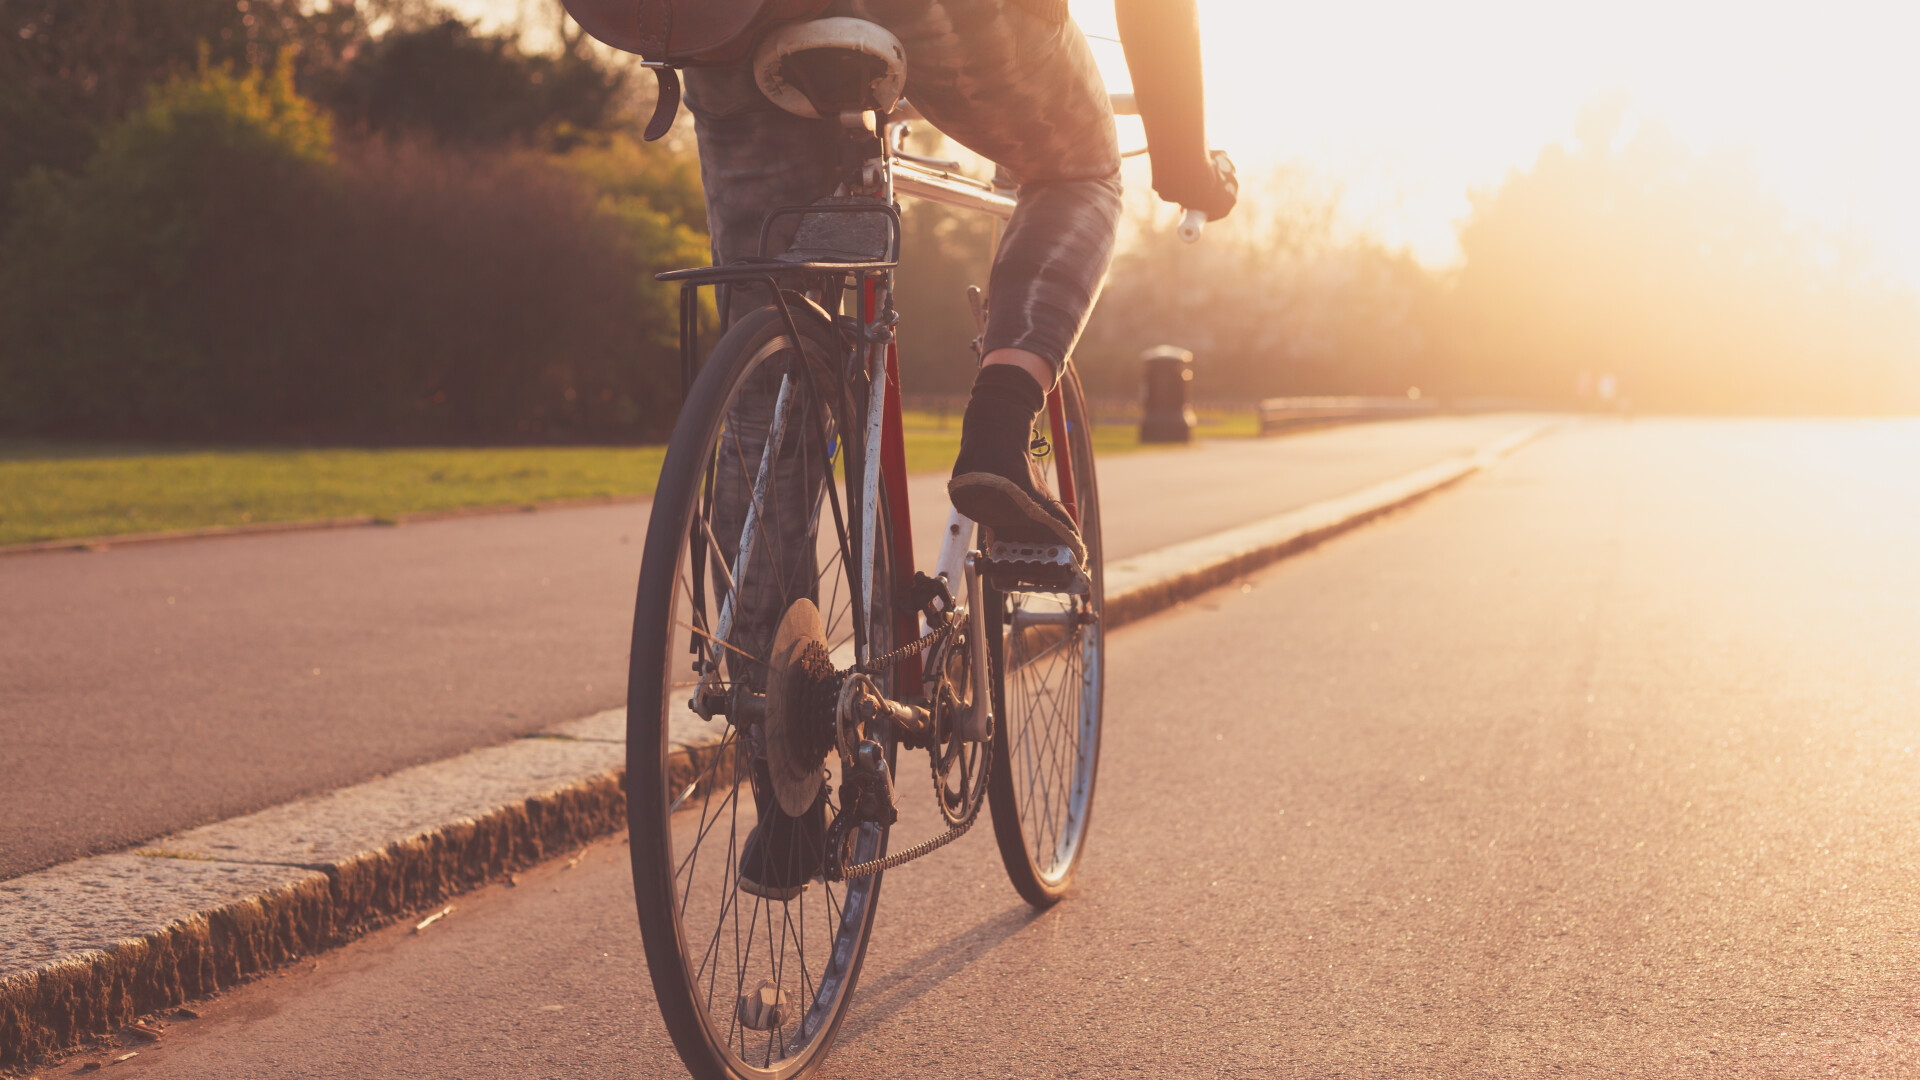 femeie pe bicicleta - Shutterstock